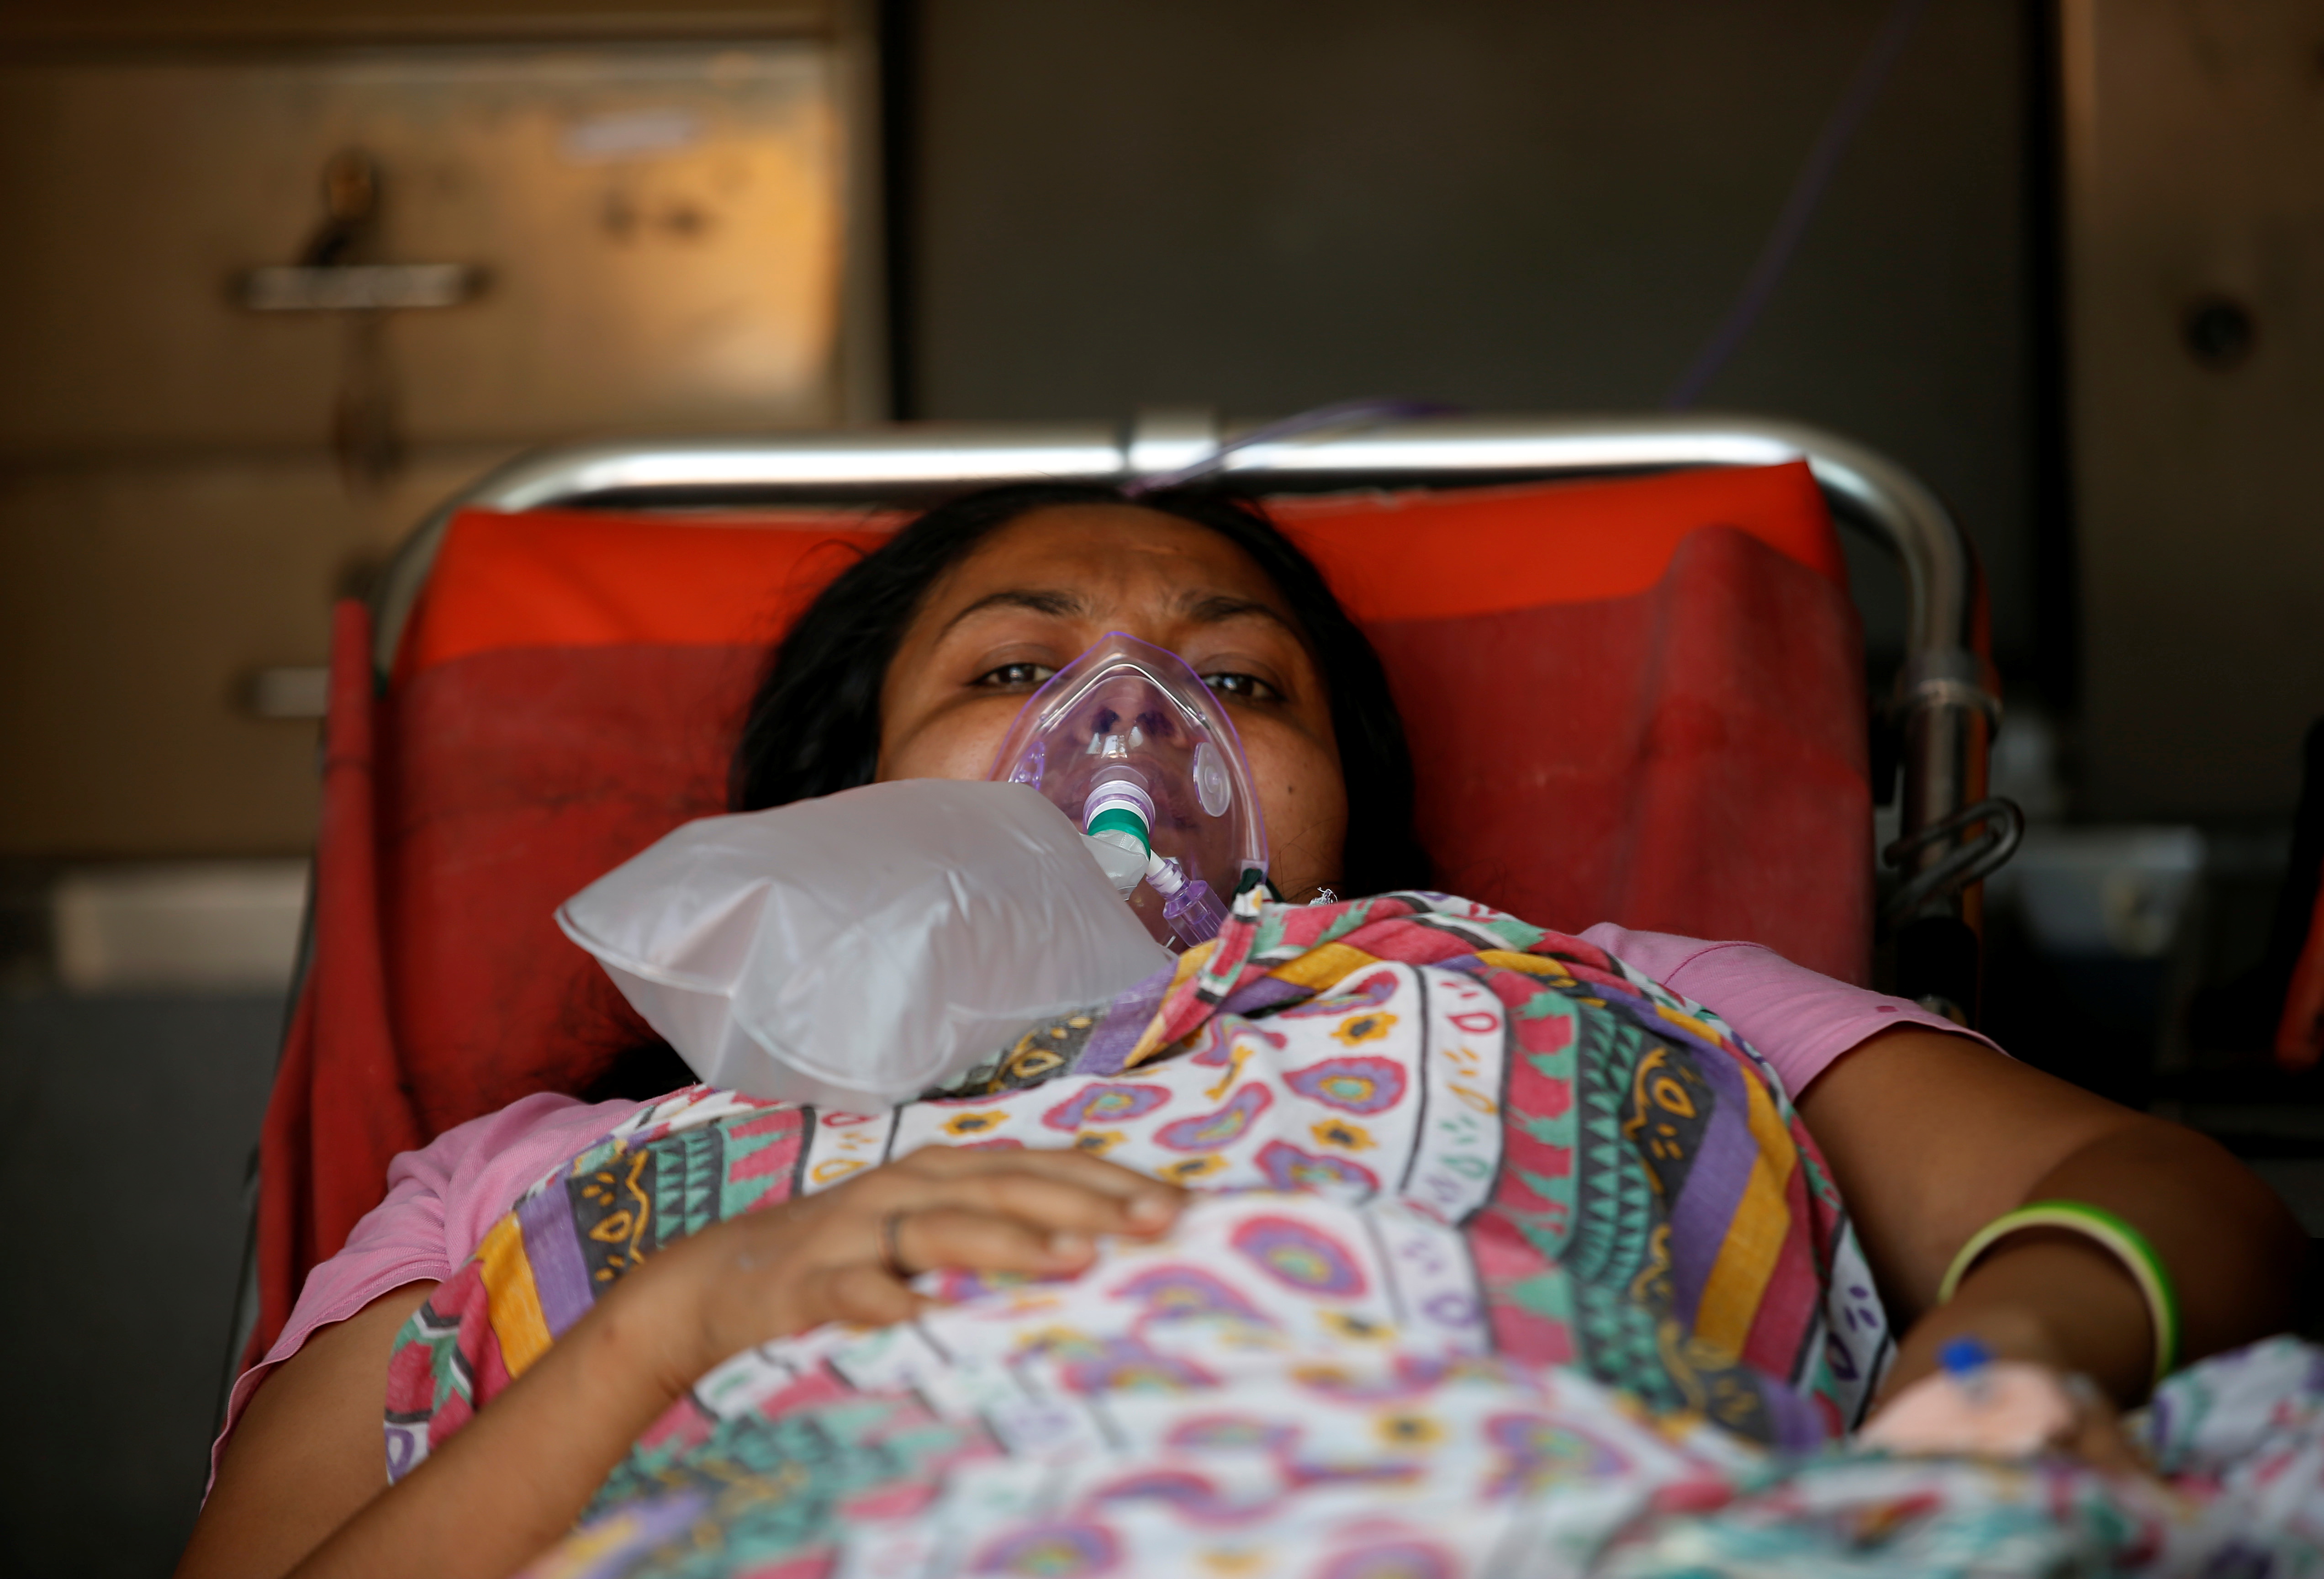 Una paciente con un problema respiratorio usa una máscara de oxígeno mientras yace dentro de una ambulancia esperando en una fila para ingresar a un hospital COVID-19, en medio de la pandemia de la enfermedad por coronavirus, Ahmedabad, India, 14 de abril de 2021. REUTERS / Amit Dave